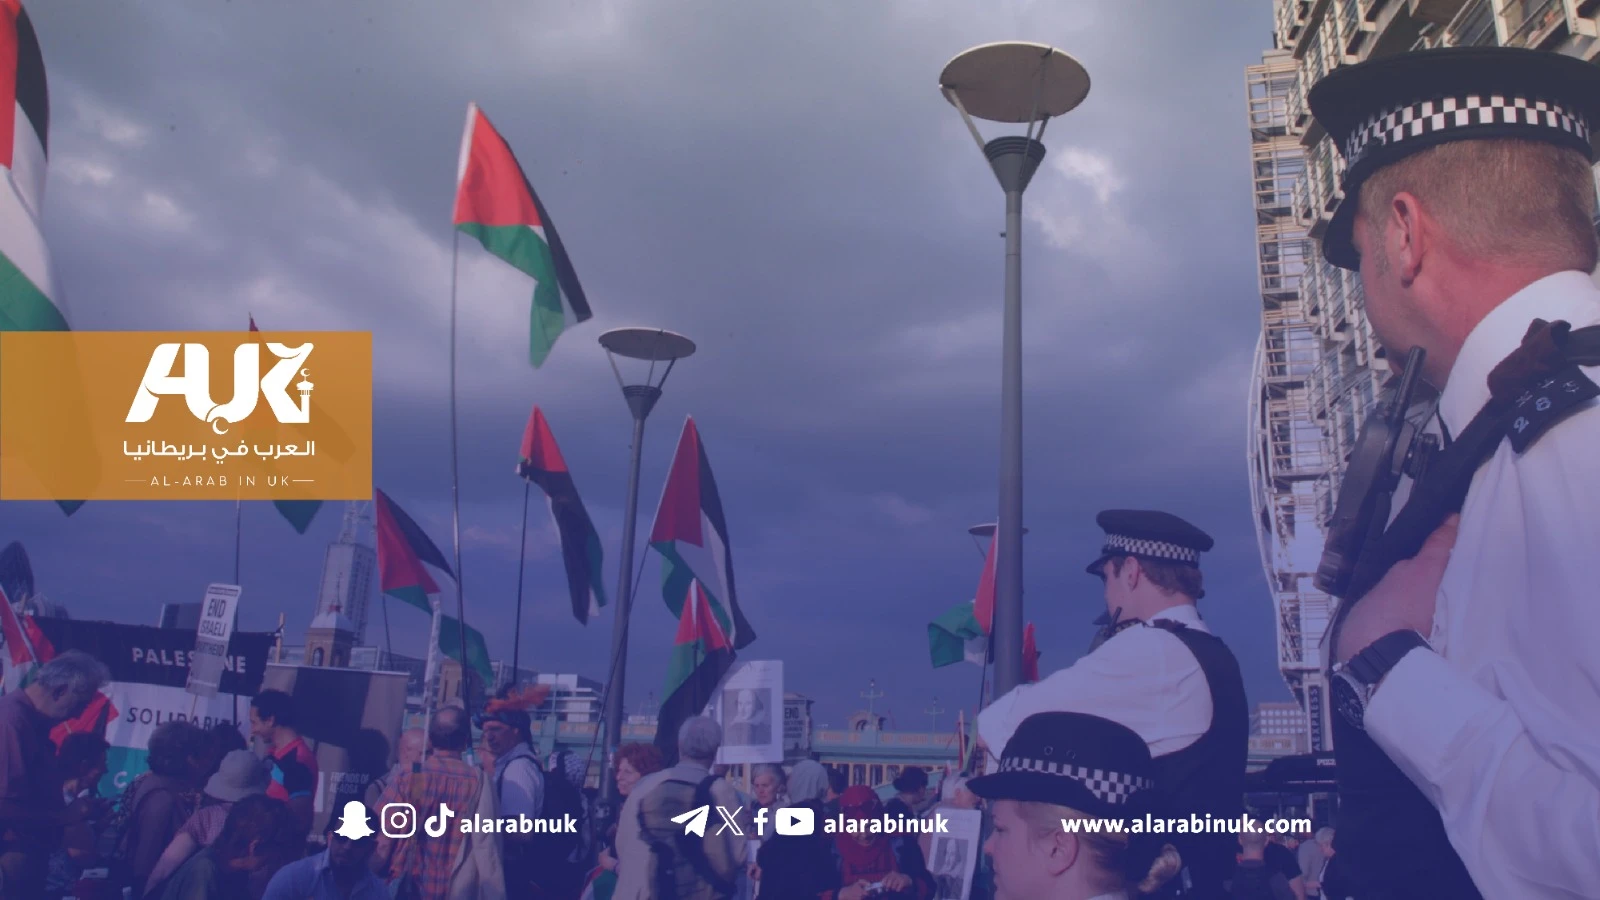 مجلس محلي في شرق لندن يأمر بإزالة الأعلام الفلسطينية من الطرقات